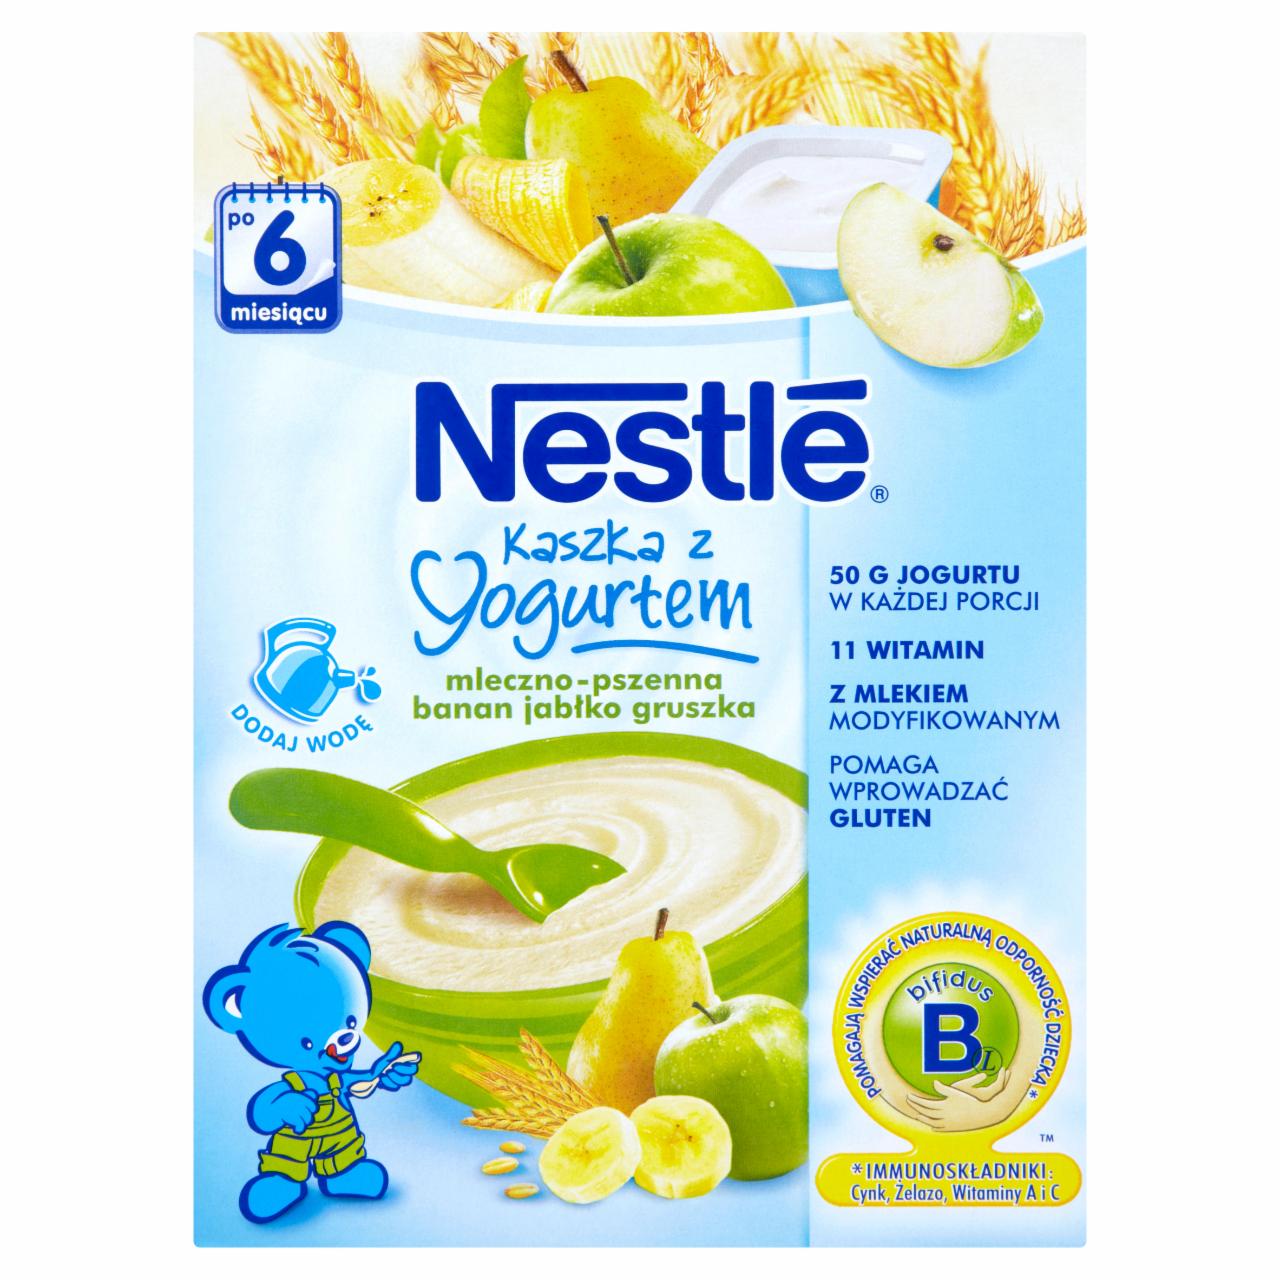 Zdjęcia - Nestlé Kaszka z jogurtem mleczno-pszenna banan jabłko gruszka po 6 miesiącu 250 g